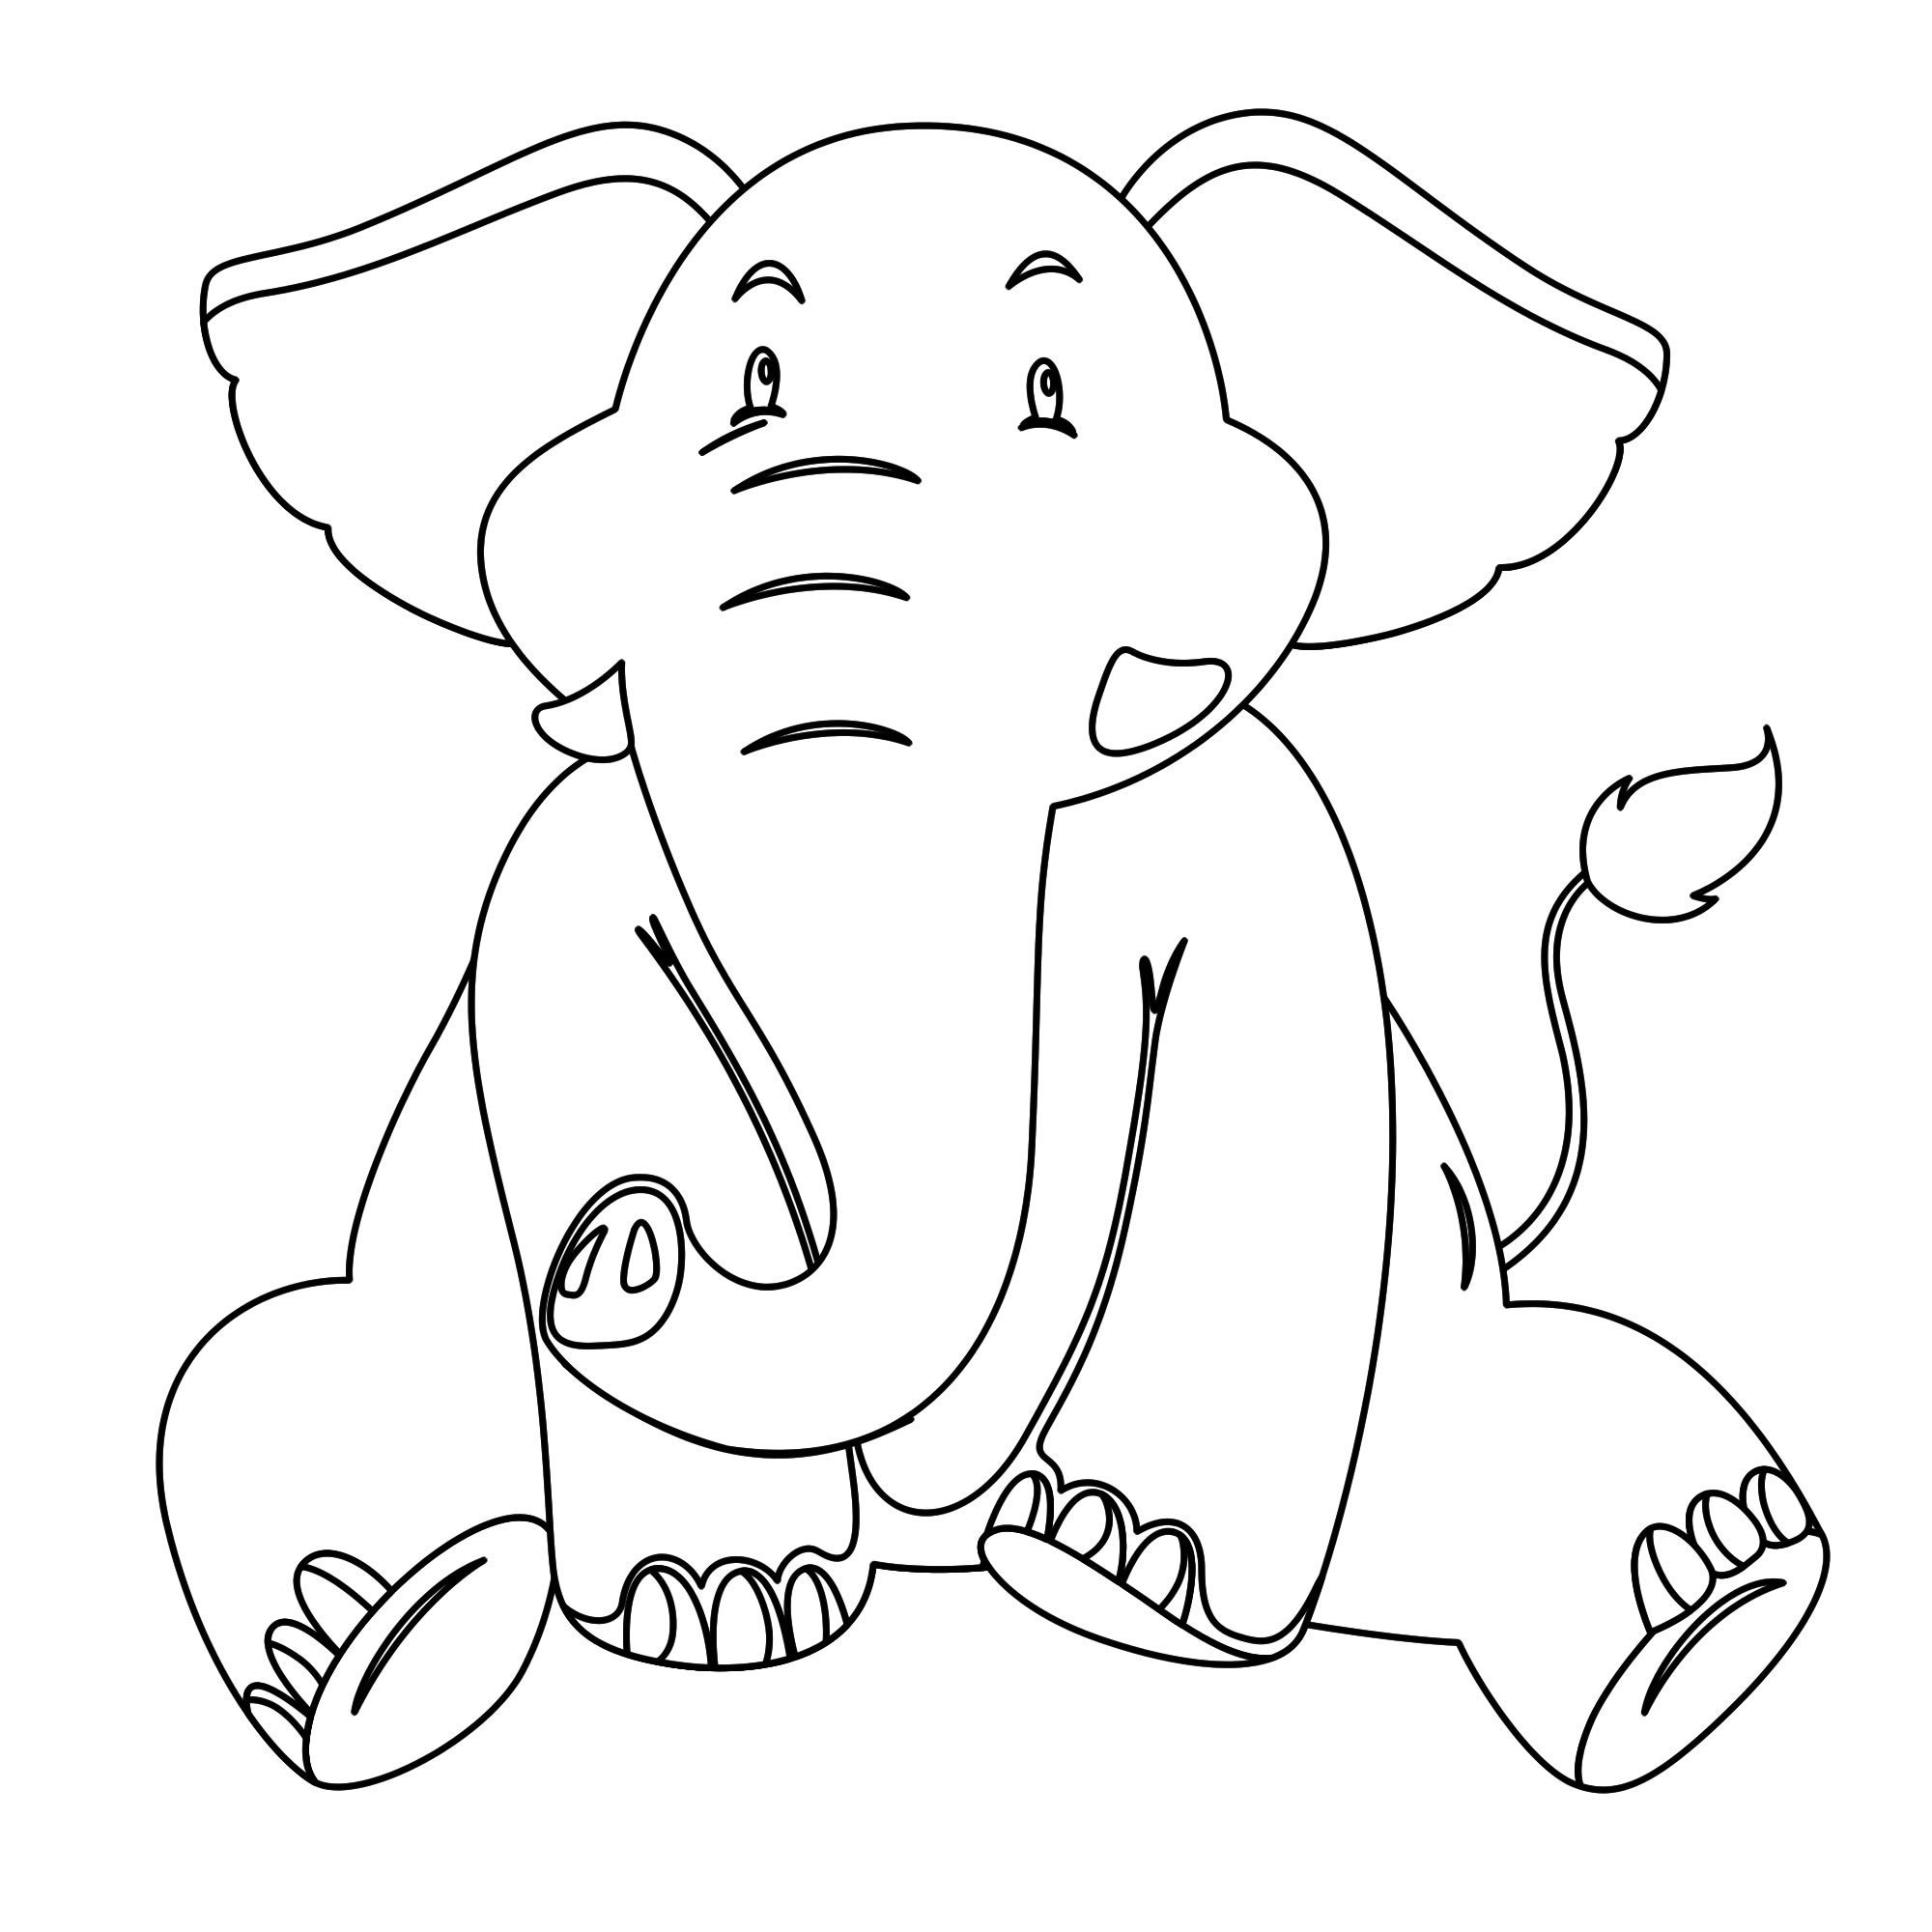 Скачать или распечатать раскраски Слон для детей